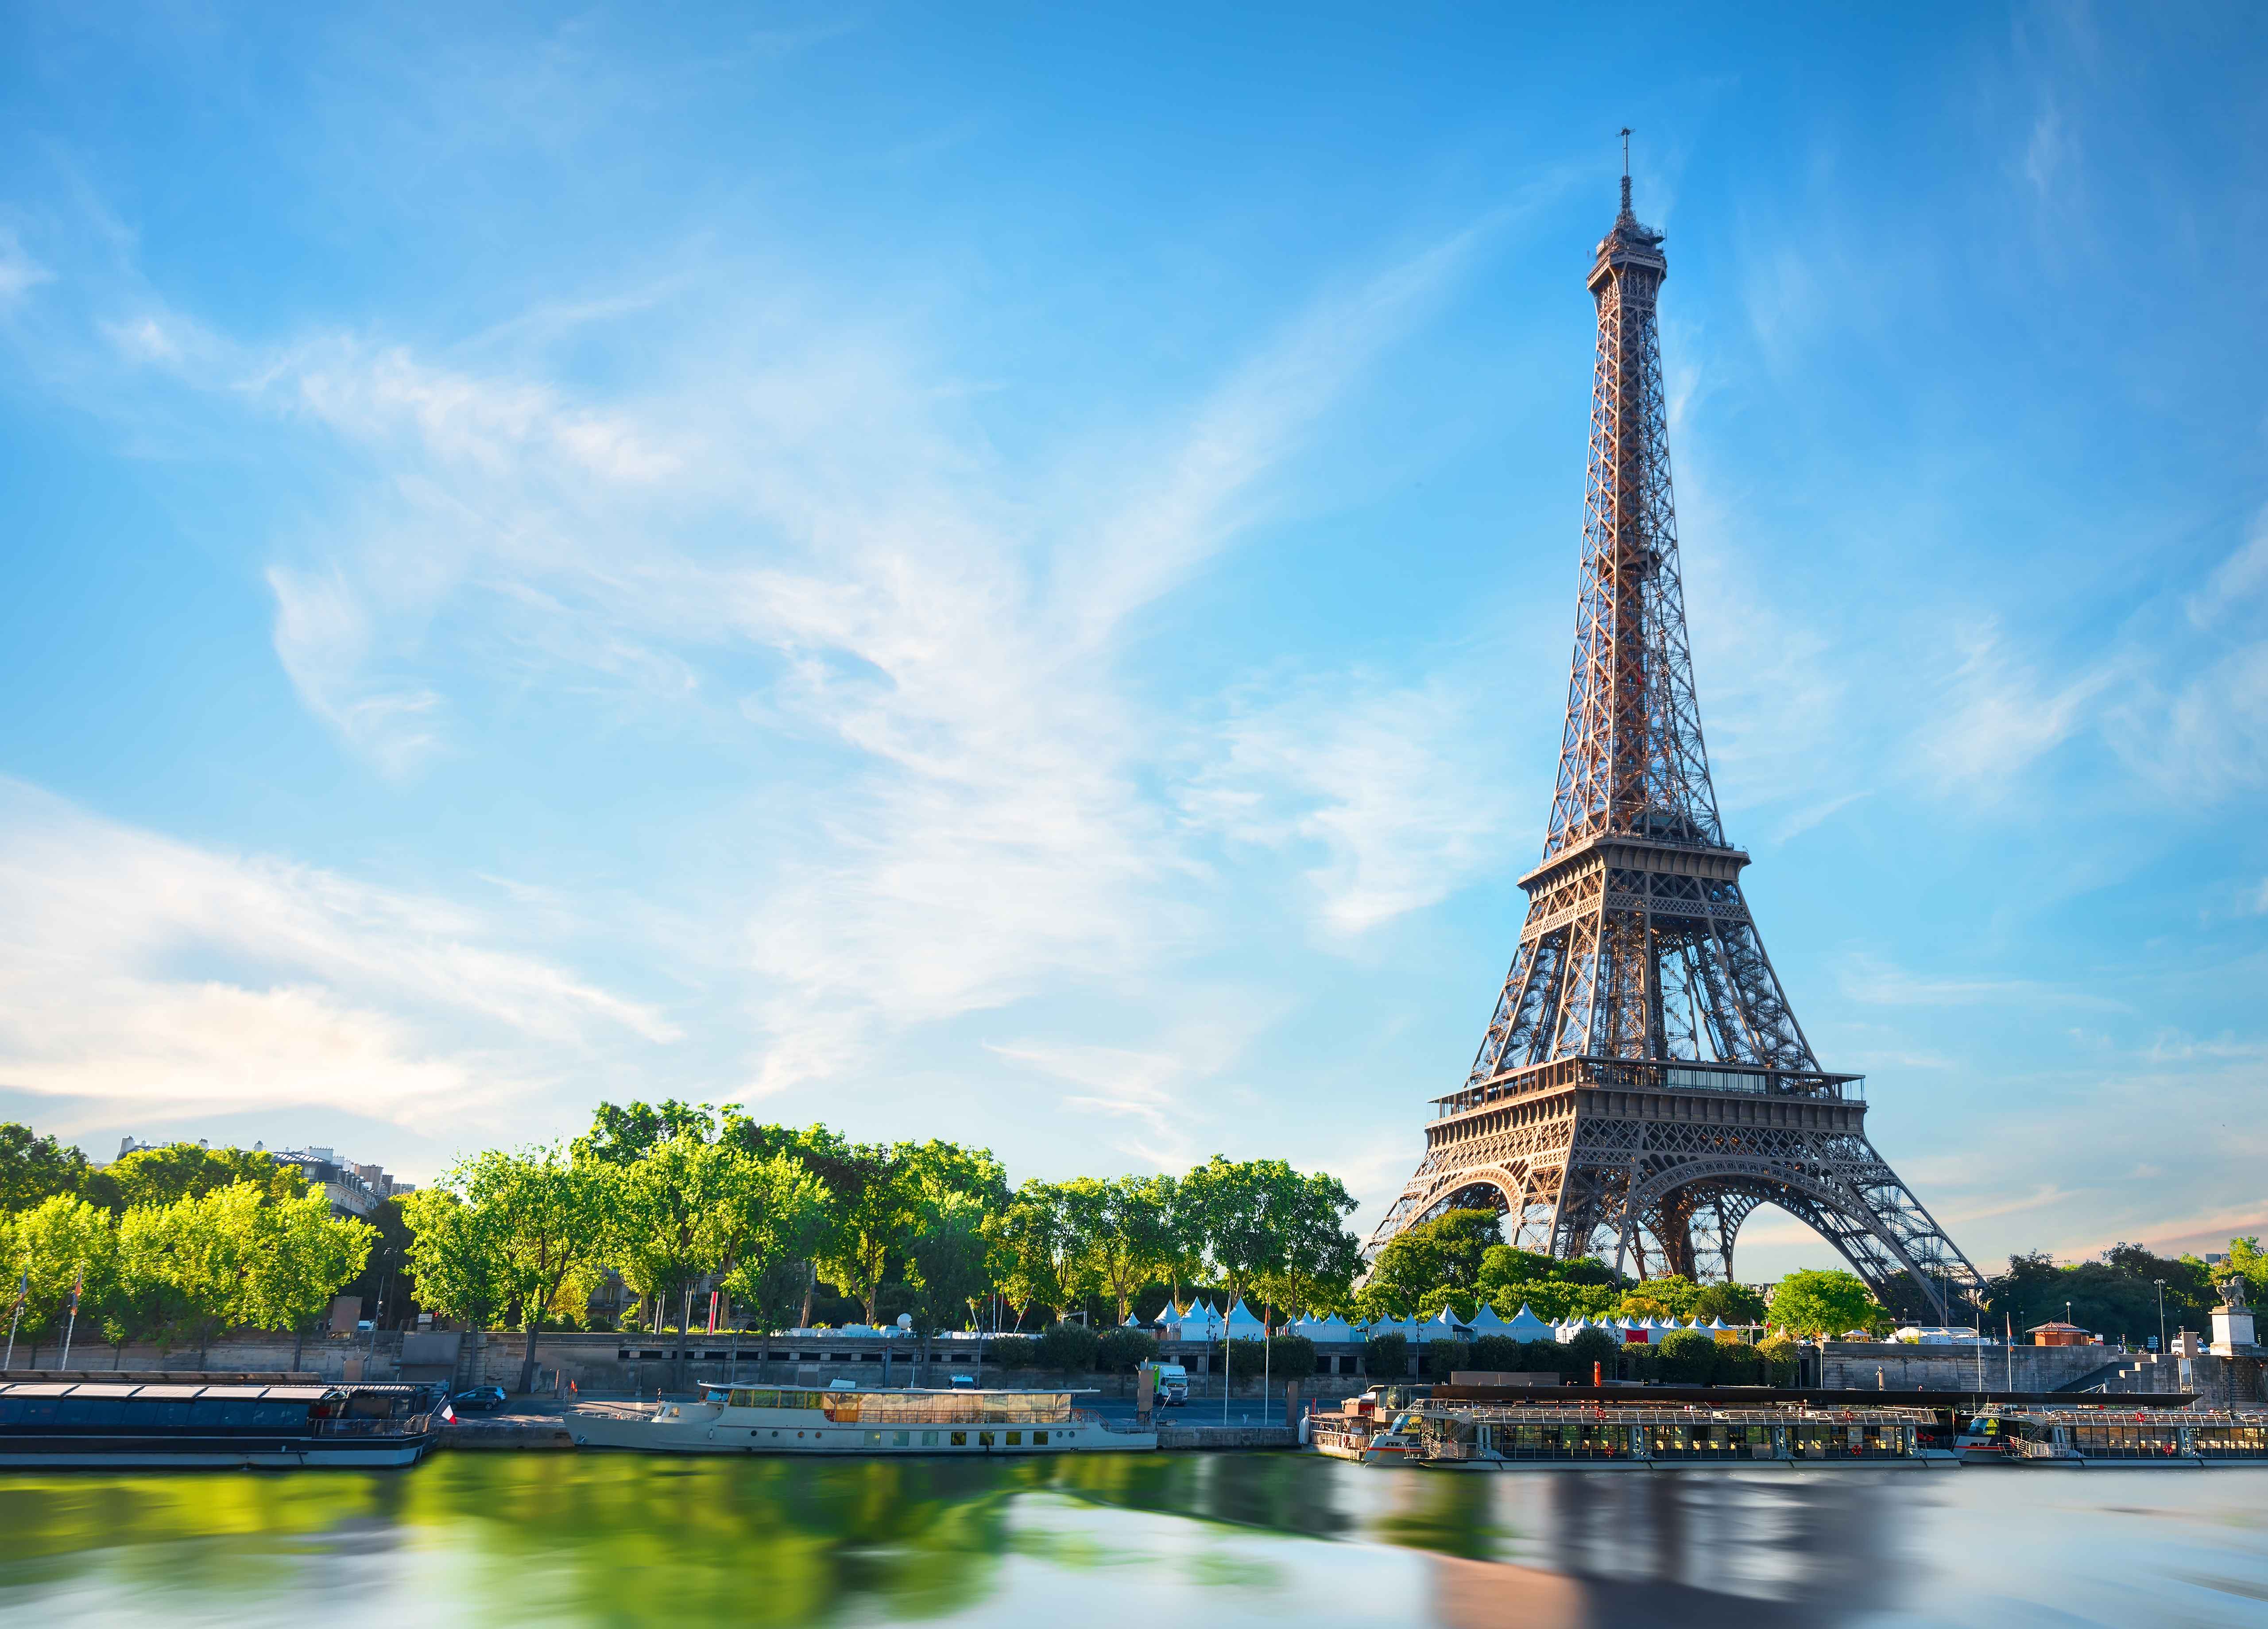 6 nơi nhất định phải đặt chân đến ở Paris tugo.com.vn